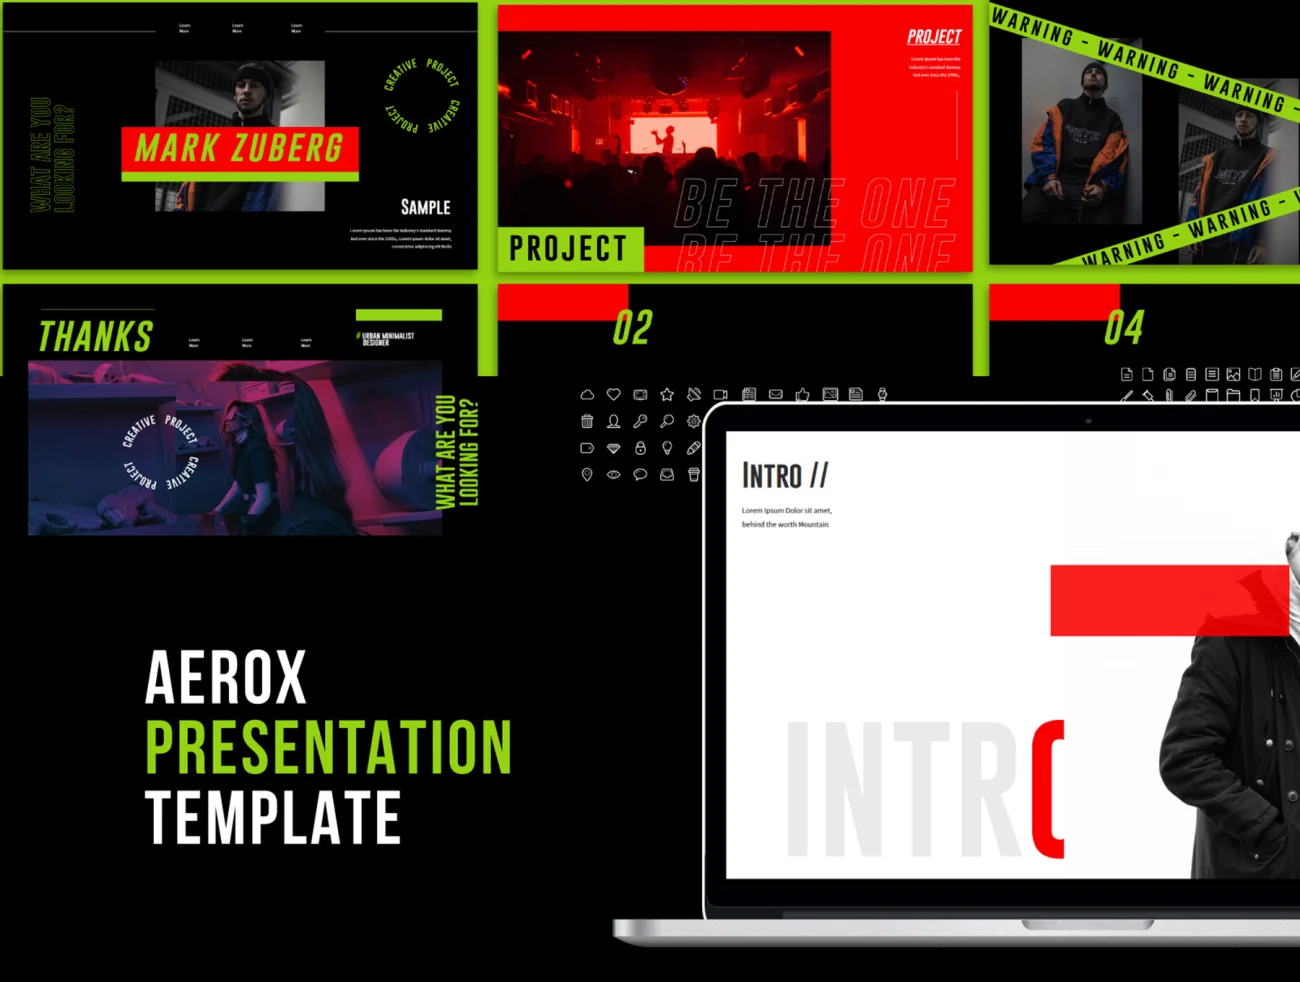 Aerox - PowerPoint Template 时尚服饰电商潮流PPT模板-PPT素材-到位啦UI